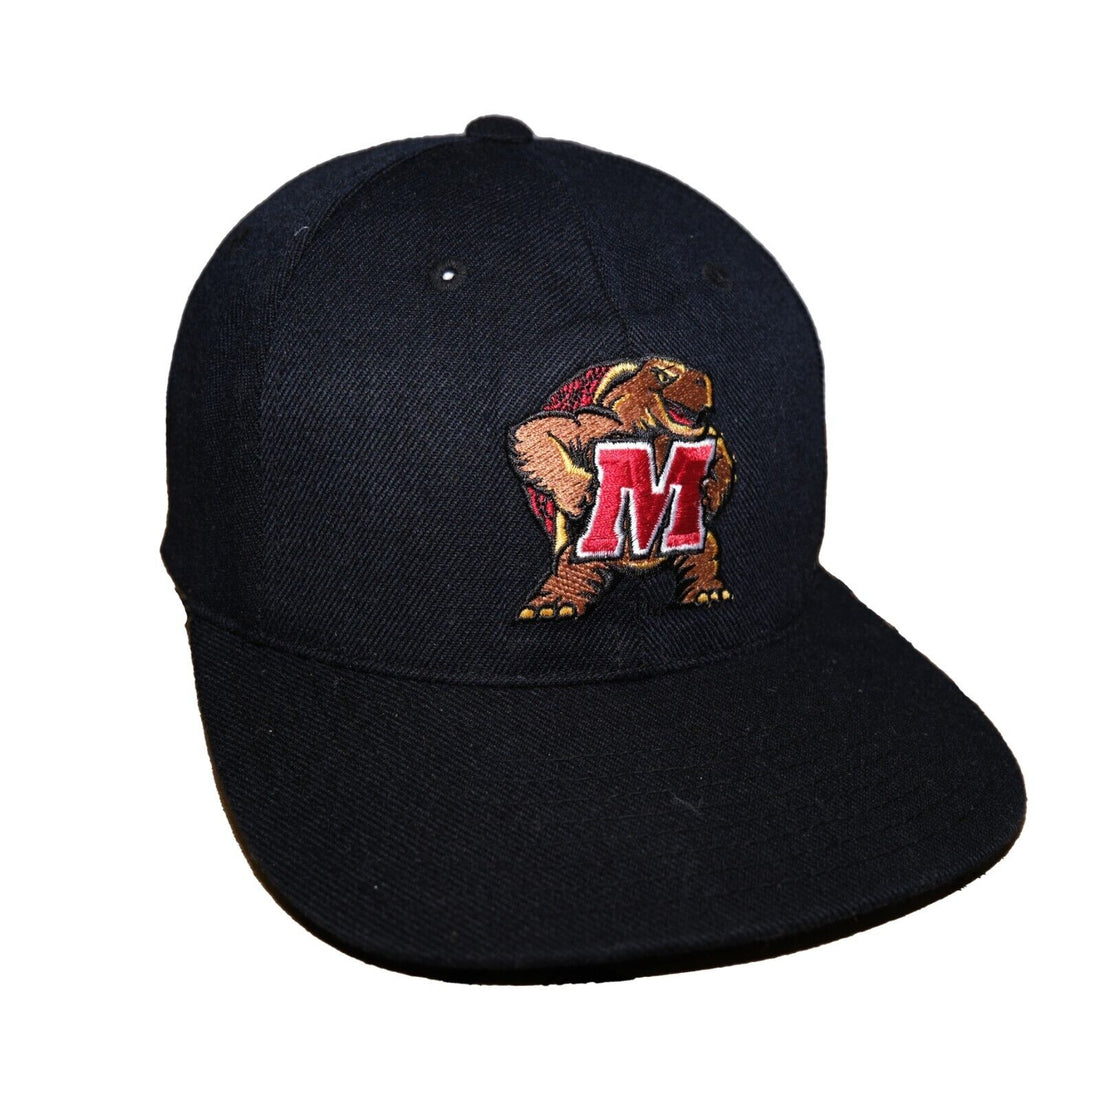 Boston Bruins vintage snapback hat by American Needle